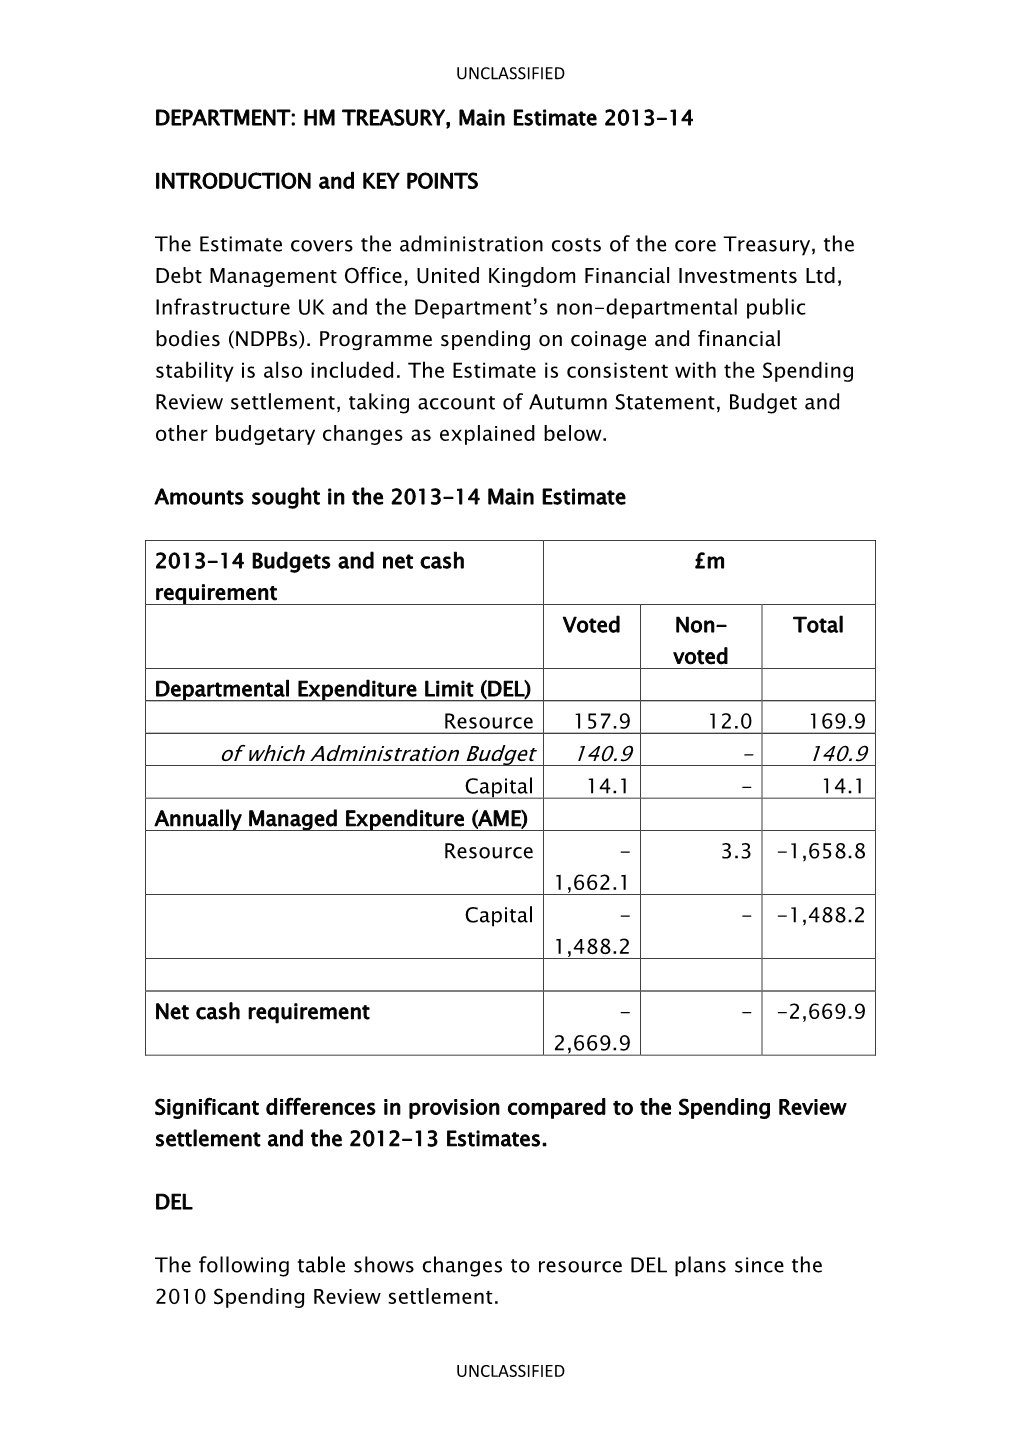 DEPARTMENT: HM TREASURY, Main Estimate 2013-14